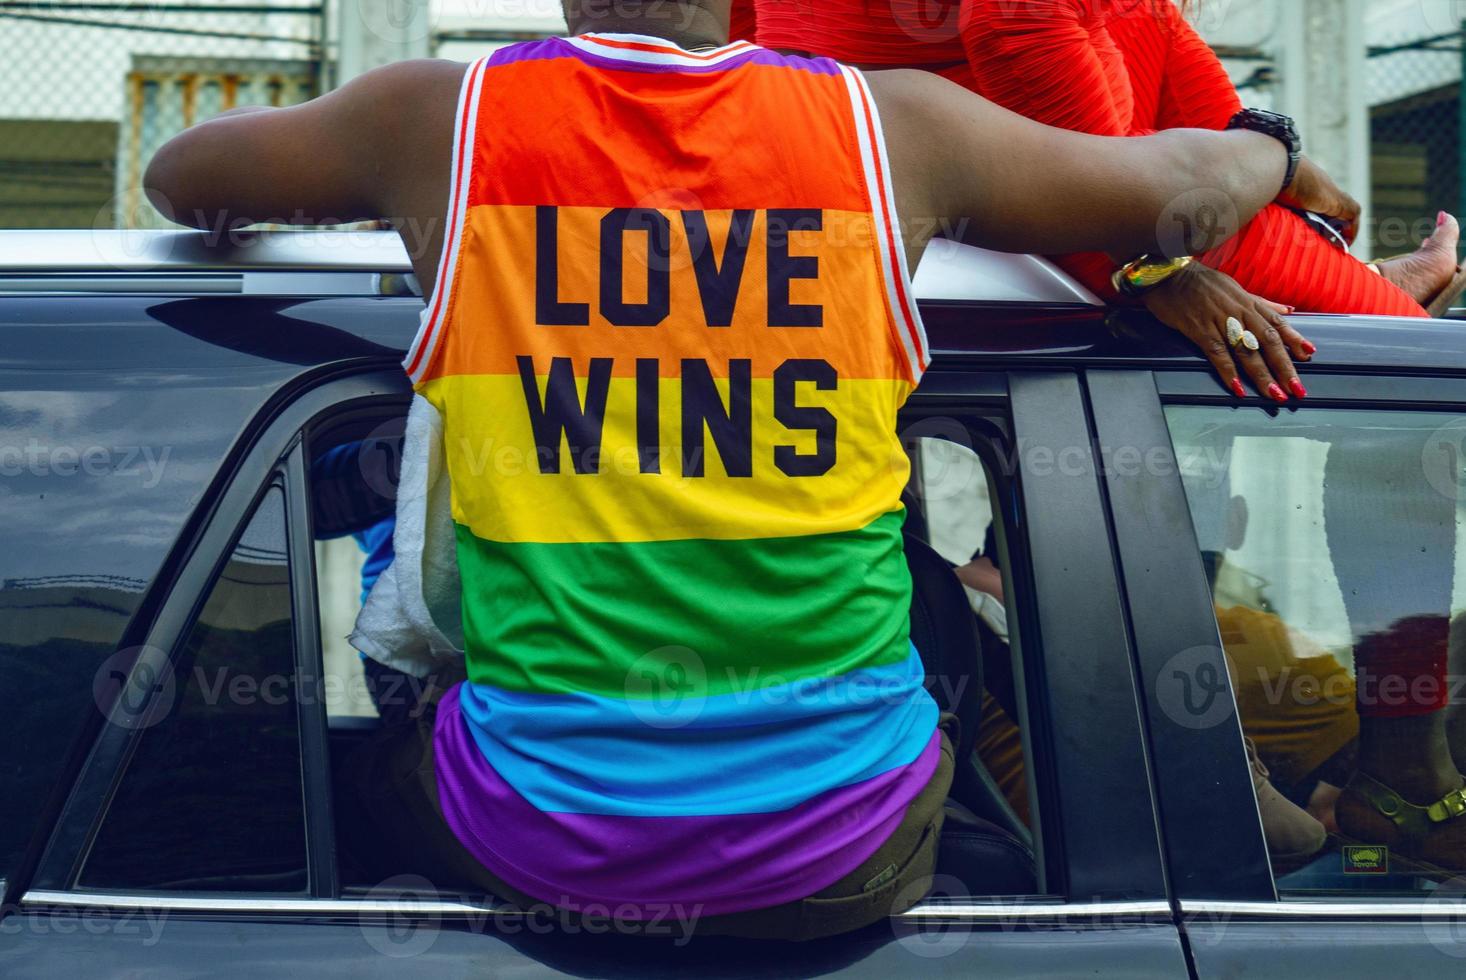 o homem usa uma camiseta com o lgbtq com as vitórias do amor escrito nele. foto